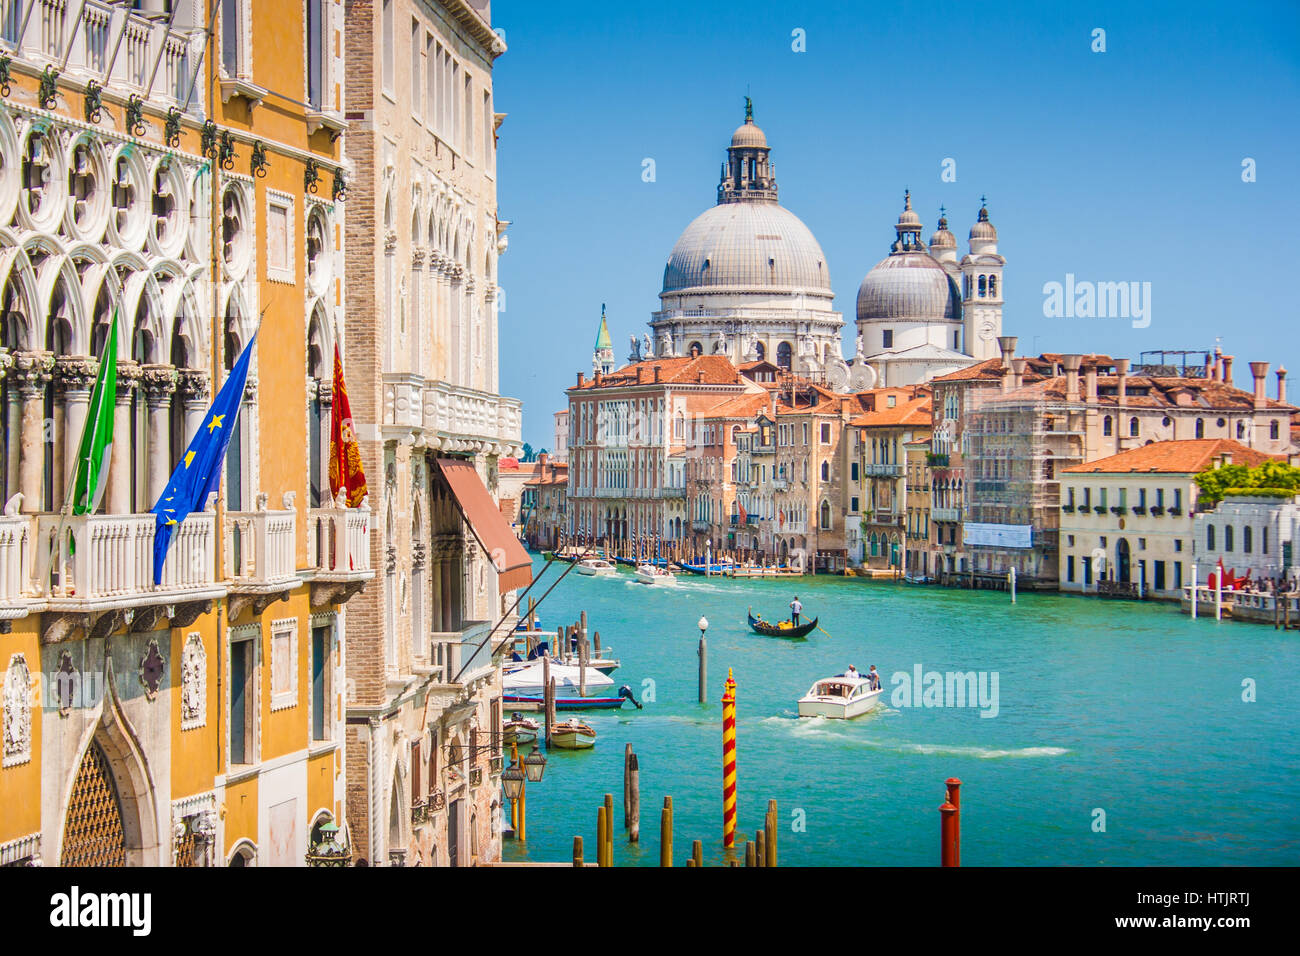 Bellissima vista del famoso Canal Grande con la Basilica di Santa Maria della Salute in background in una giornata di sole in estate, Venezia, Italia Foto Stock